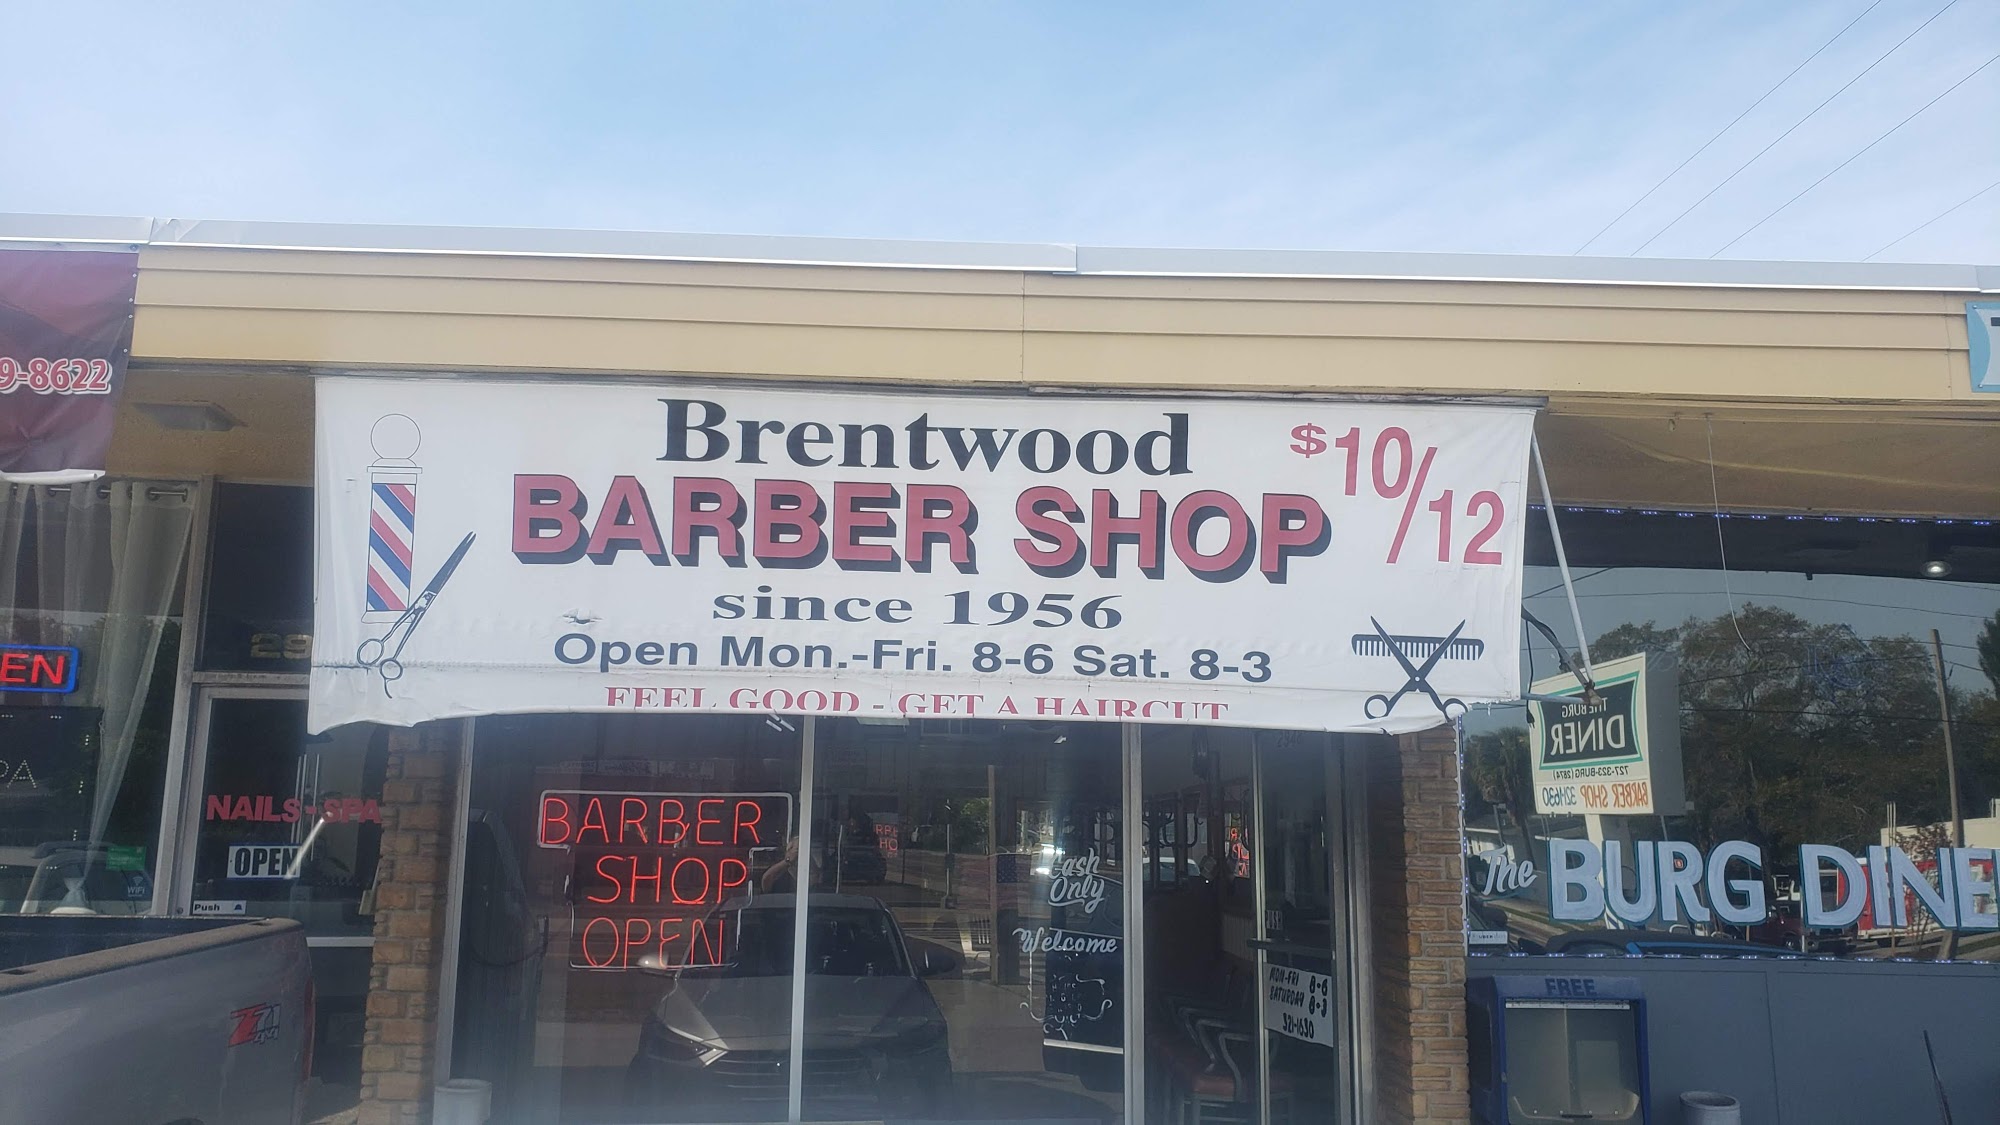 Brentwood Barber Shop